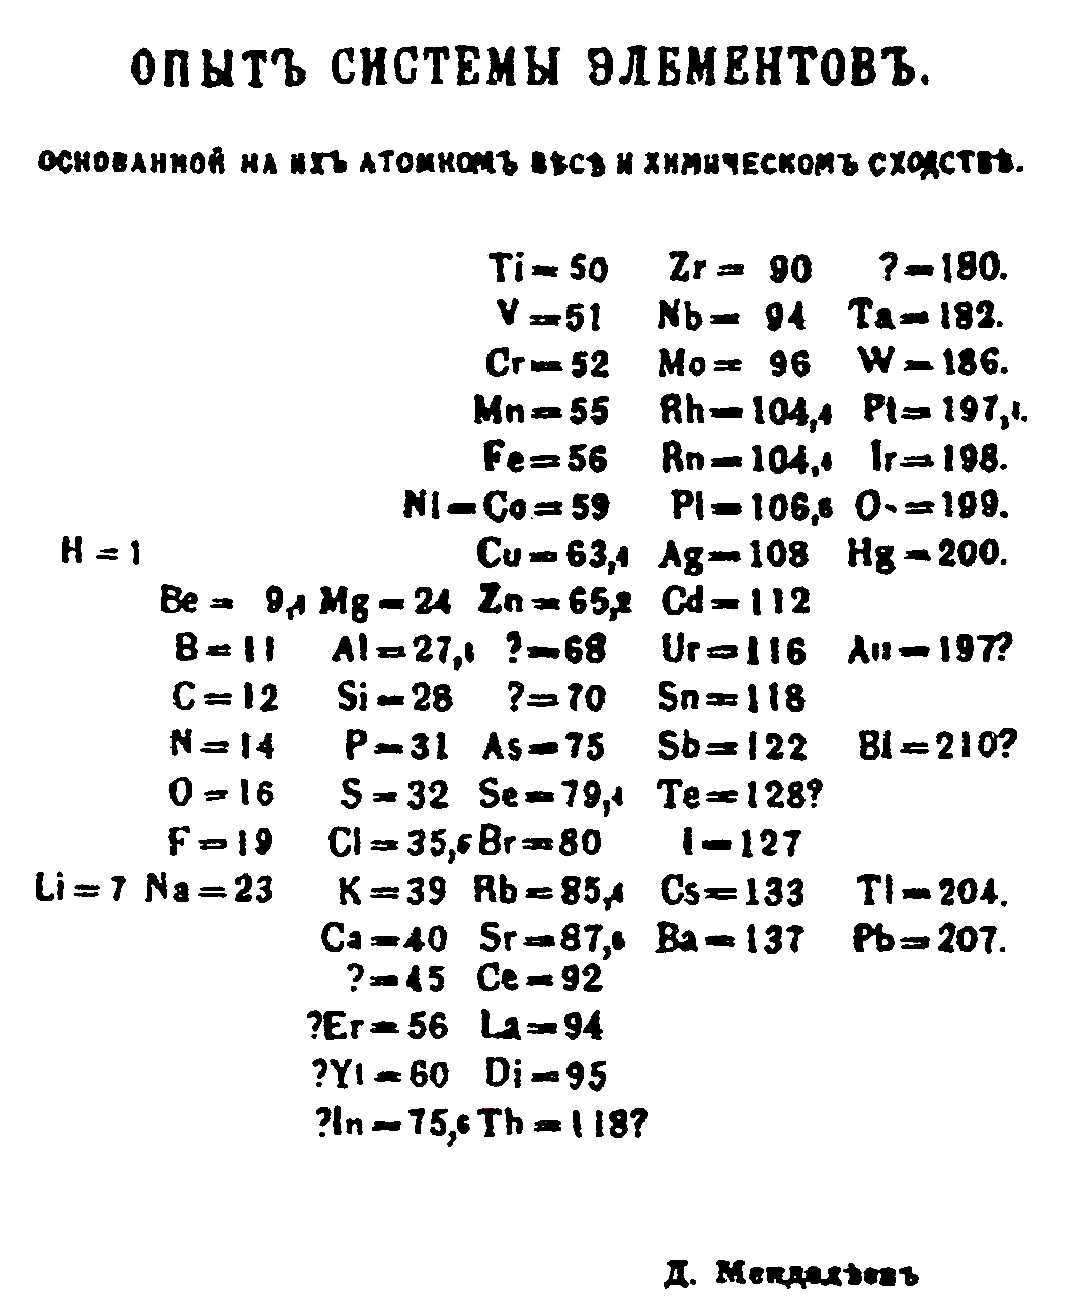 Tabela proposta por Mendeleiev, em 1869